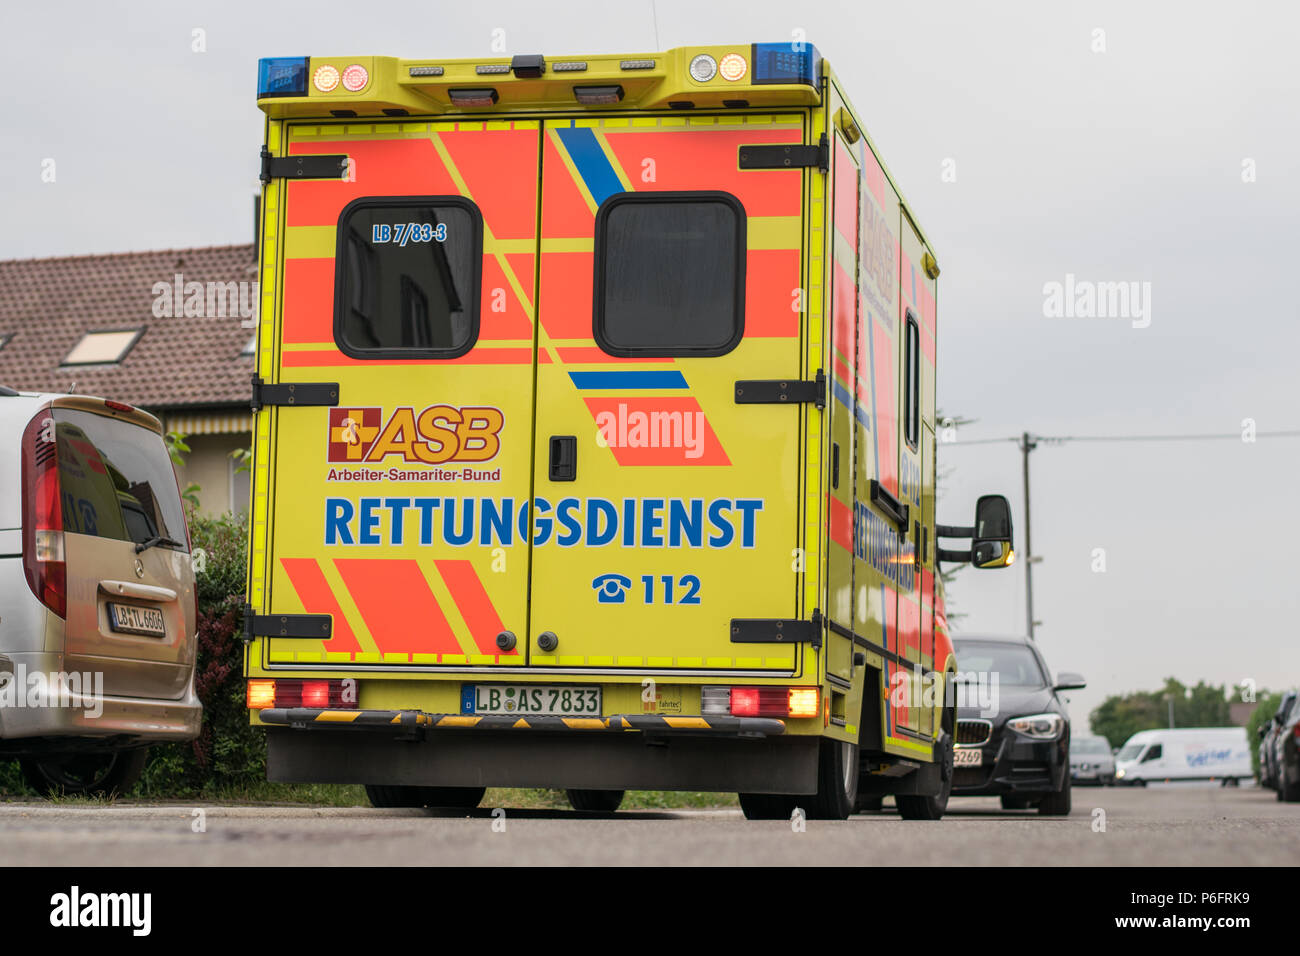 Rettungswagen des ASB im Einsatz - ambulance during an emergancy Stock Photo